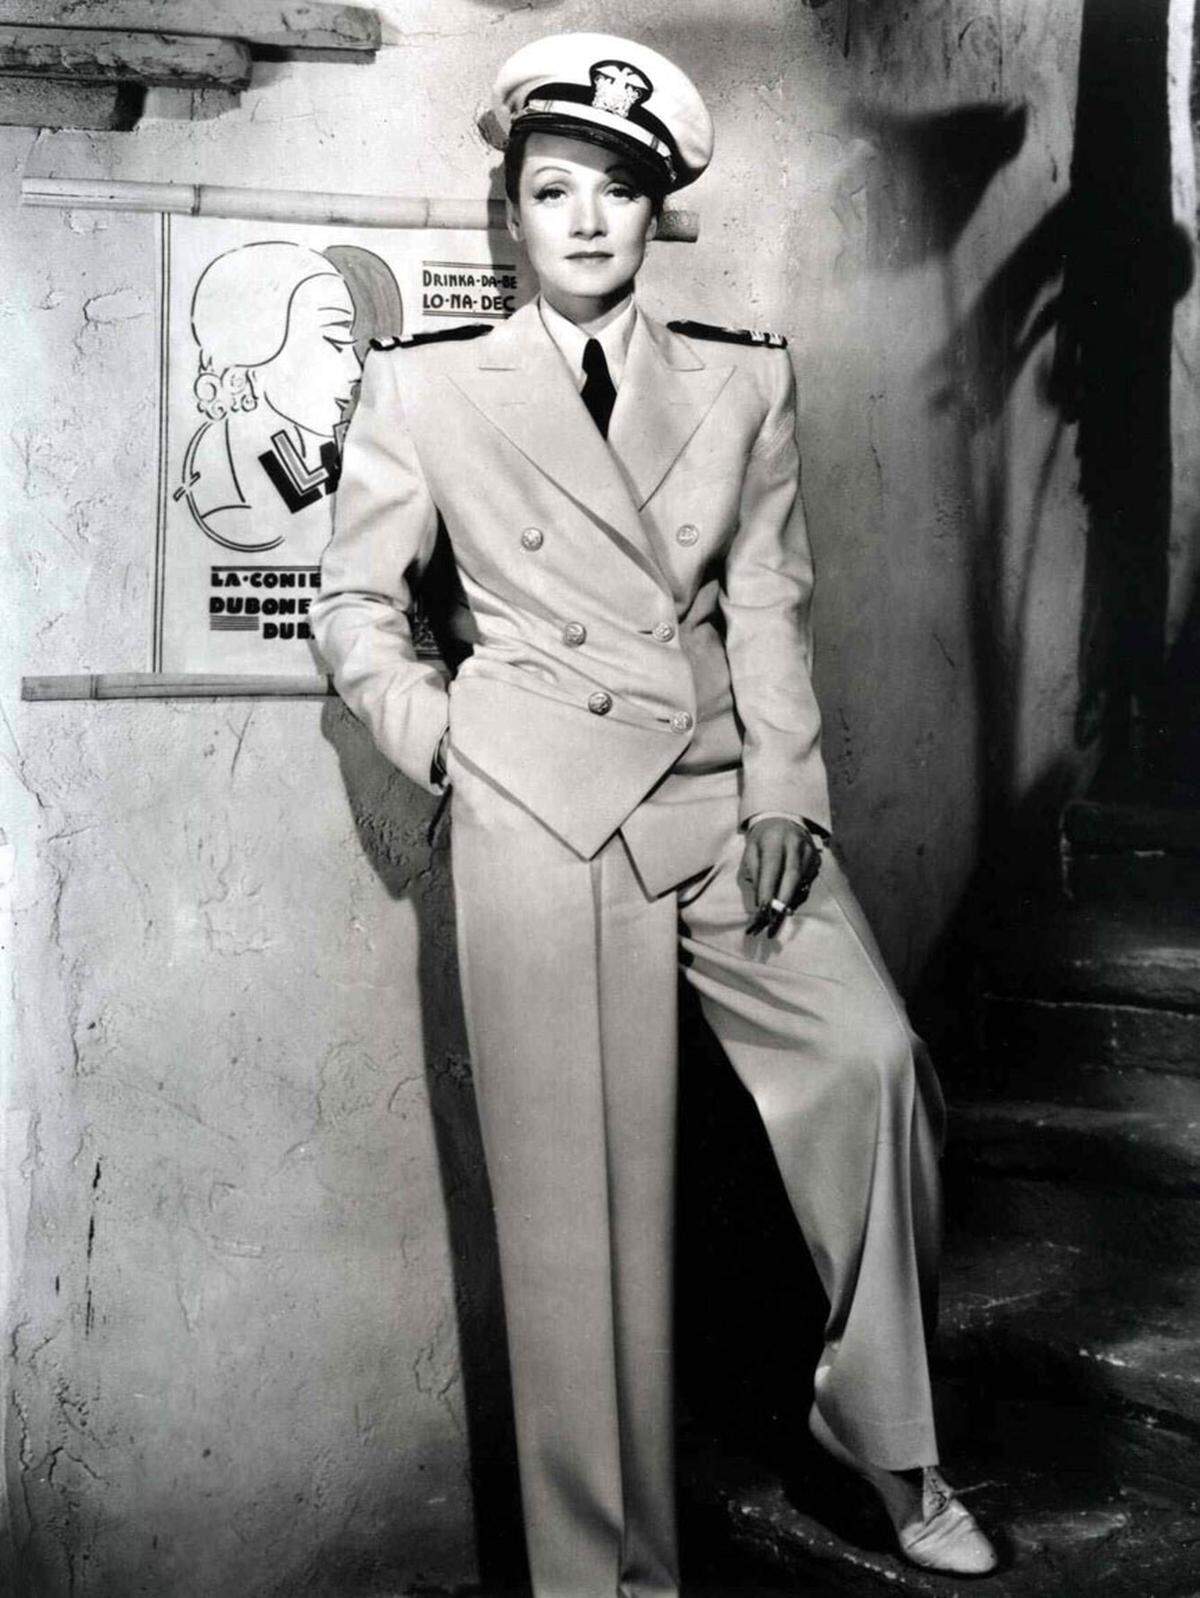 Eine Pionierin auf diesem Versicherungsgebiet war Marlene Dietrich. Um 1,8 Millionen Dollar ließ die Vorzeige-Diva der 30er Jahre einst ihre Beine schützen.